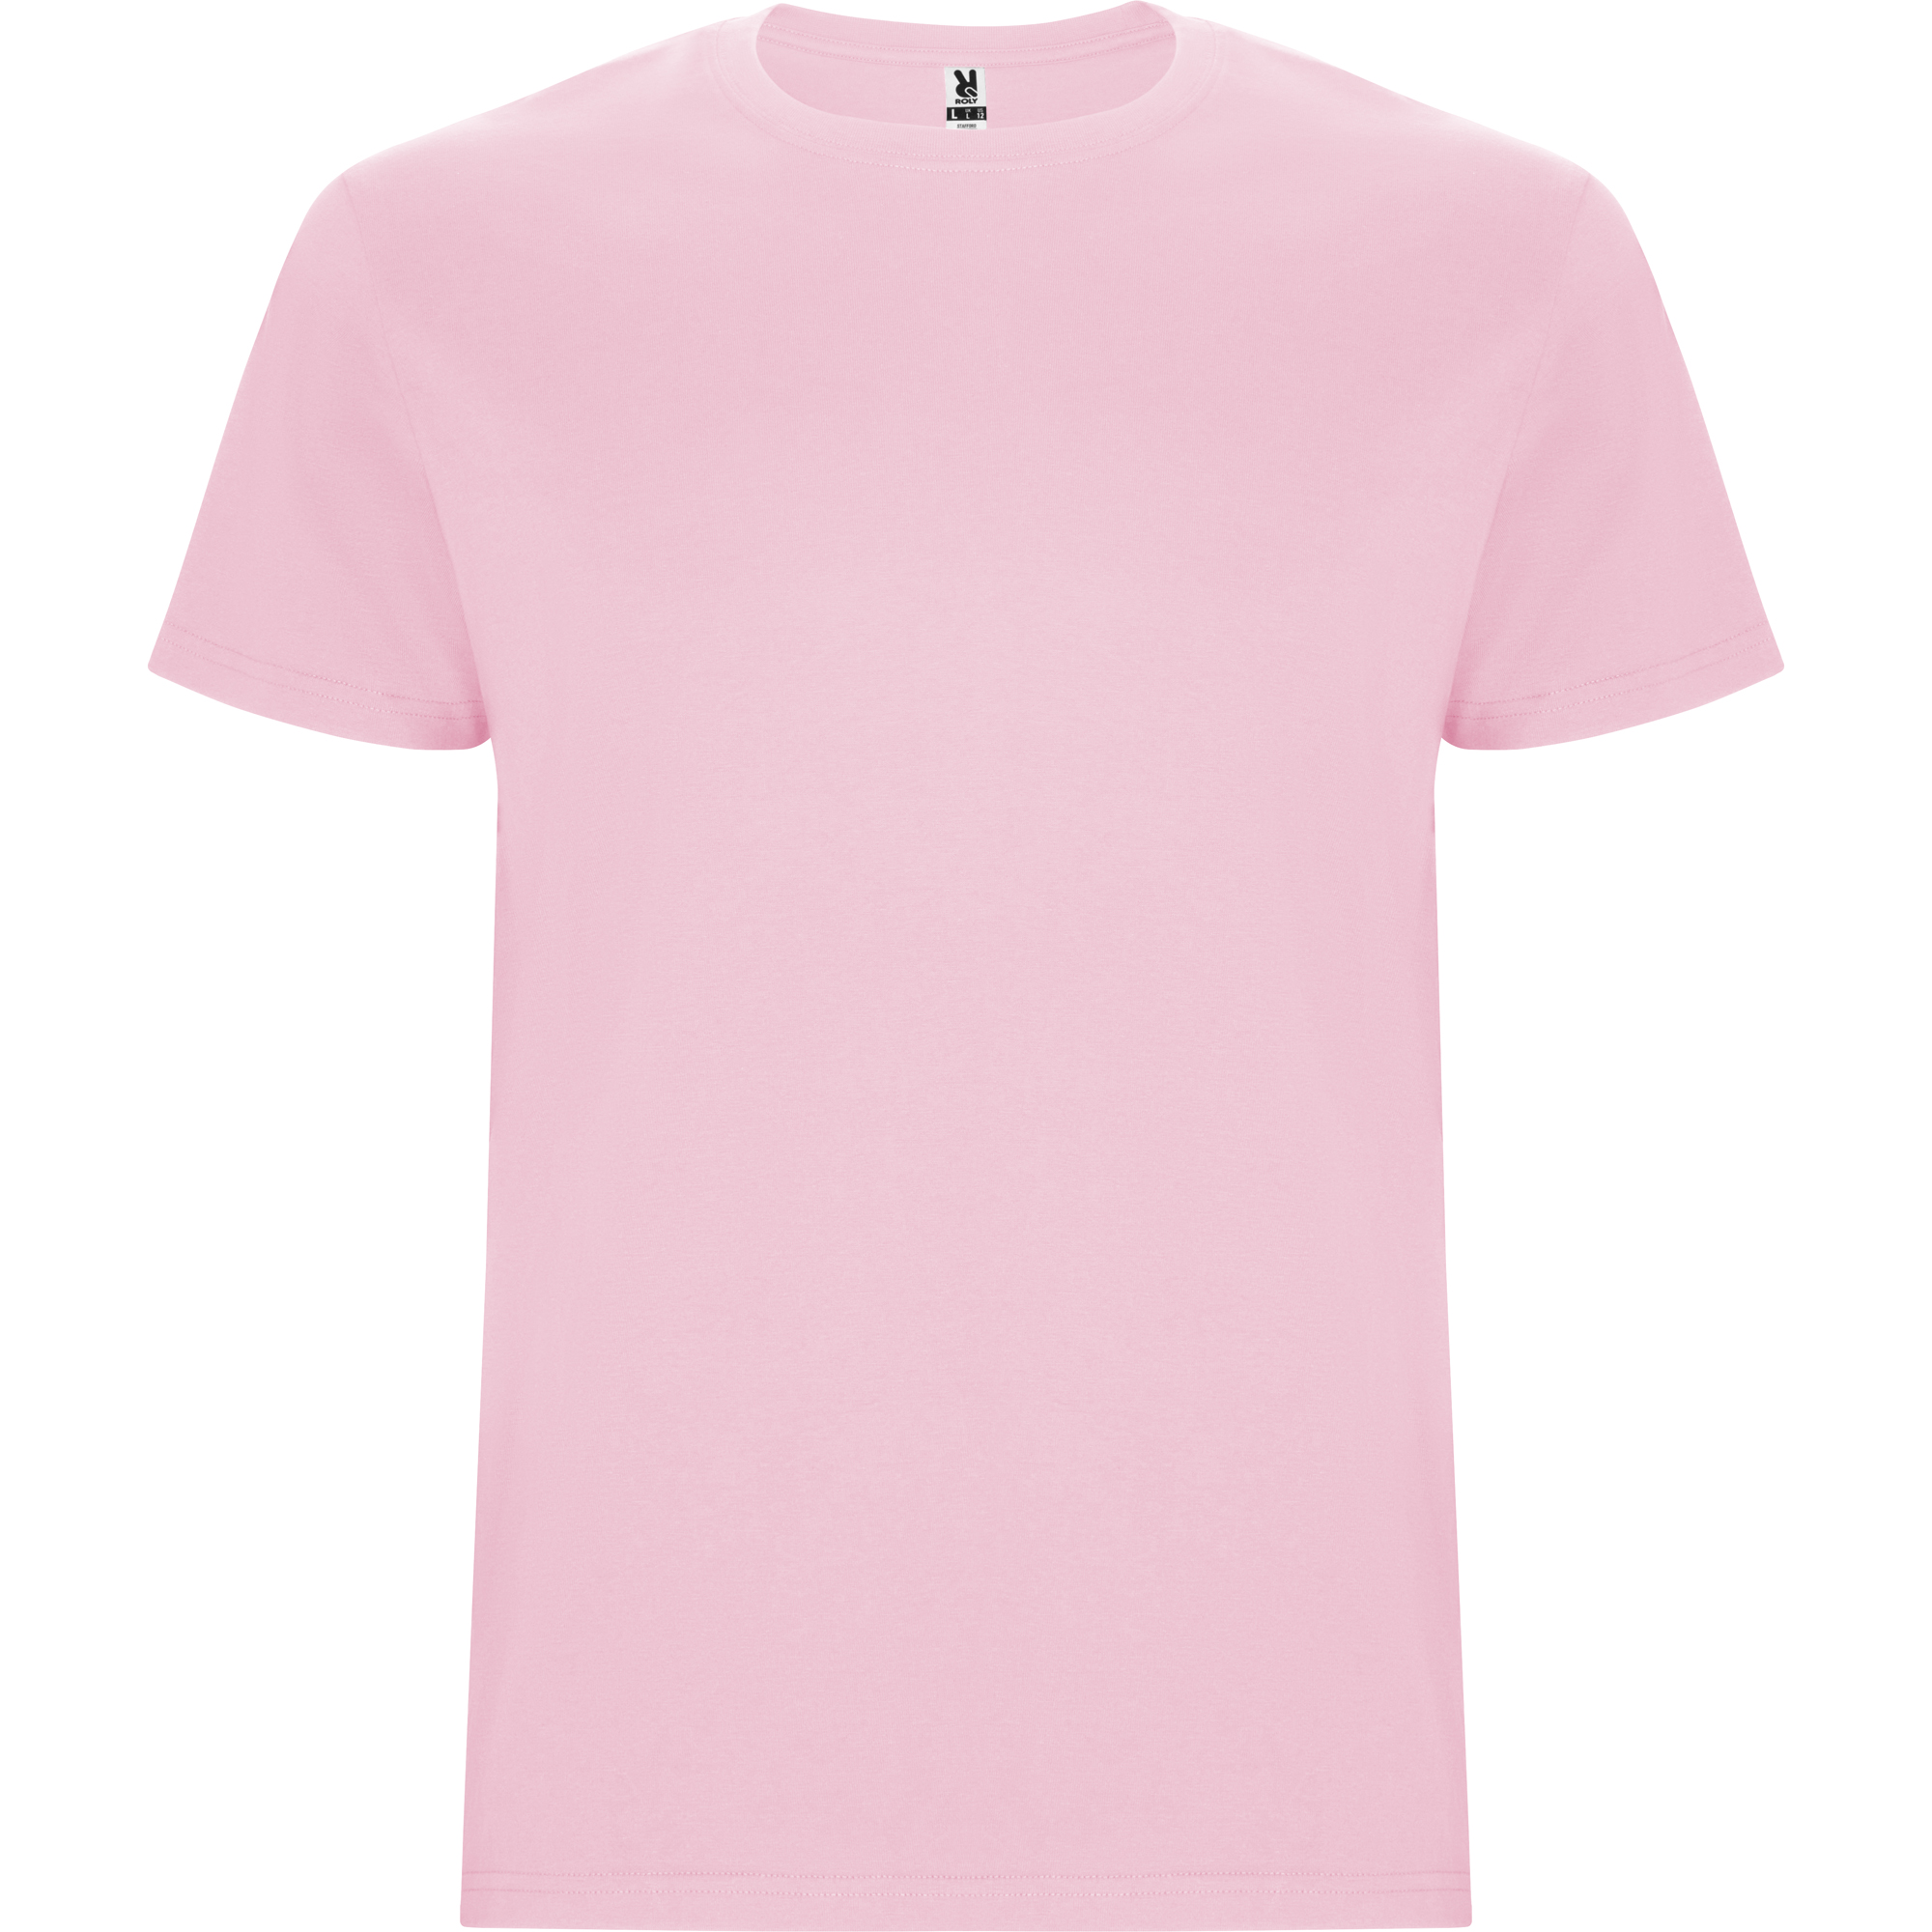 r6681-roly-stafford-t-shirt-tubolare-rosa-chiaro.jpg